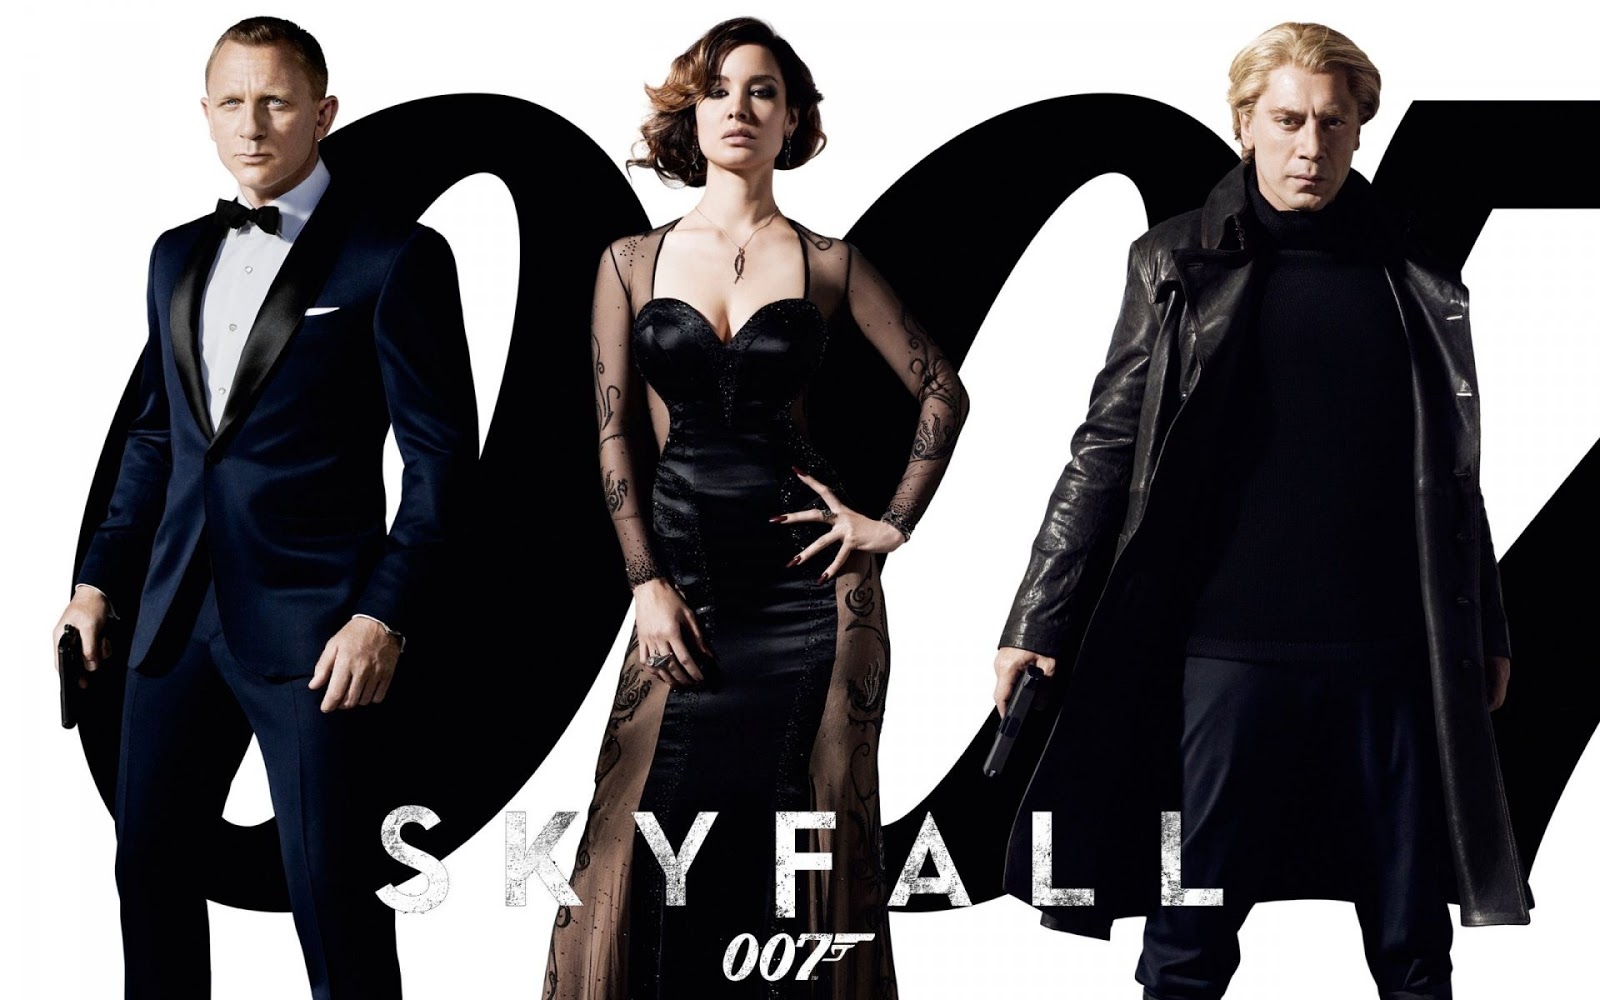 007 wallpaper,moda,vestito formale,moda gotica,vestitino nero,completo da uomo